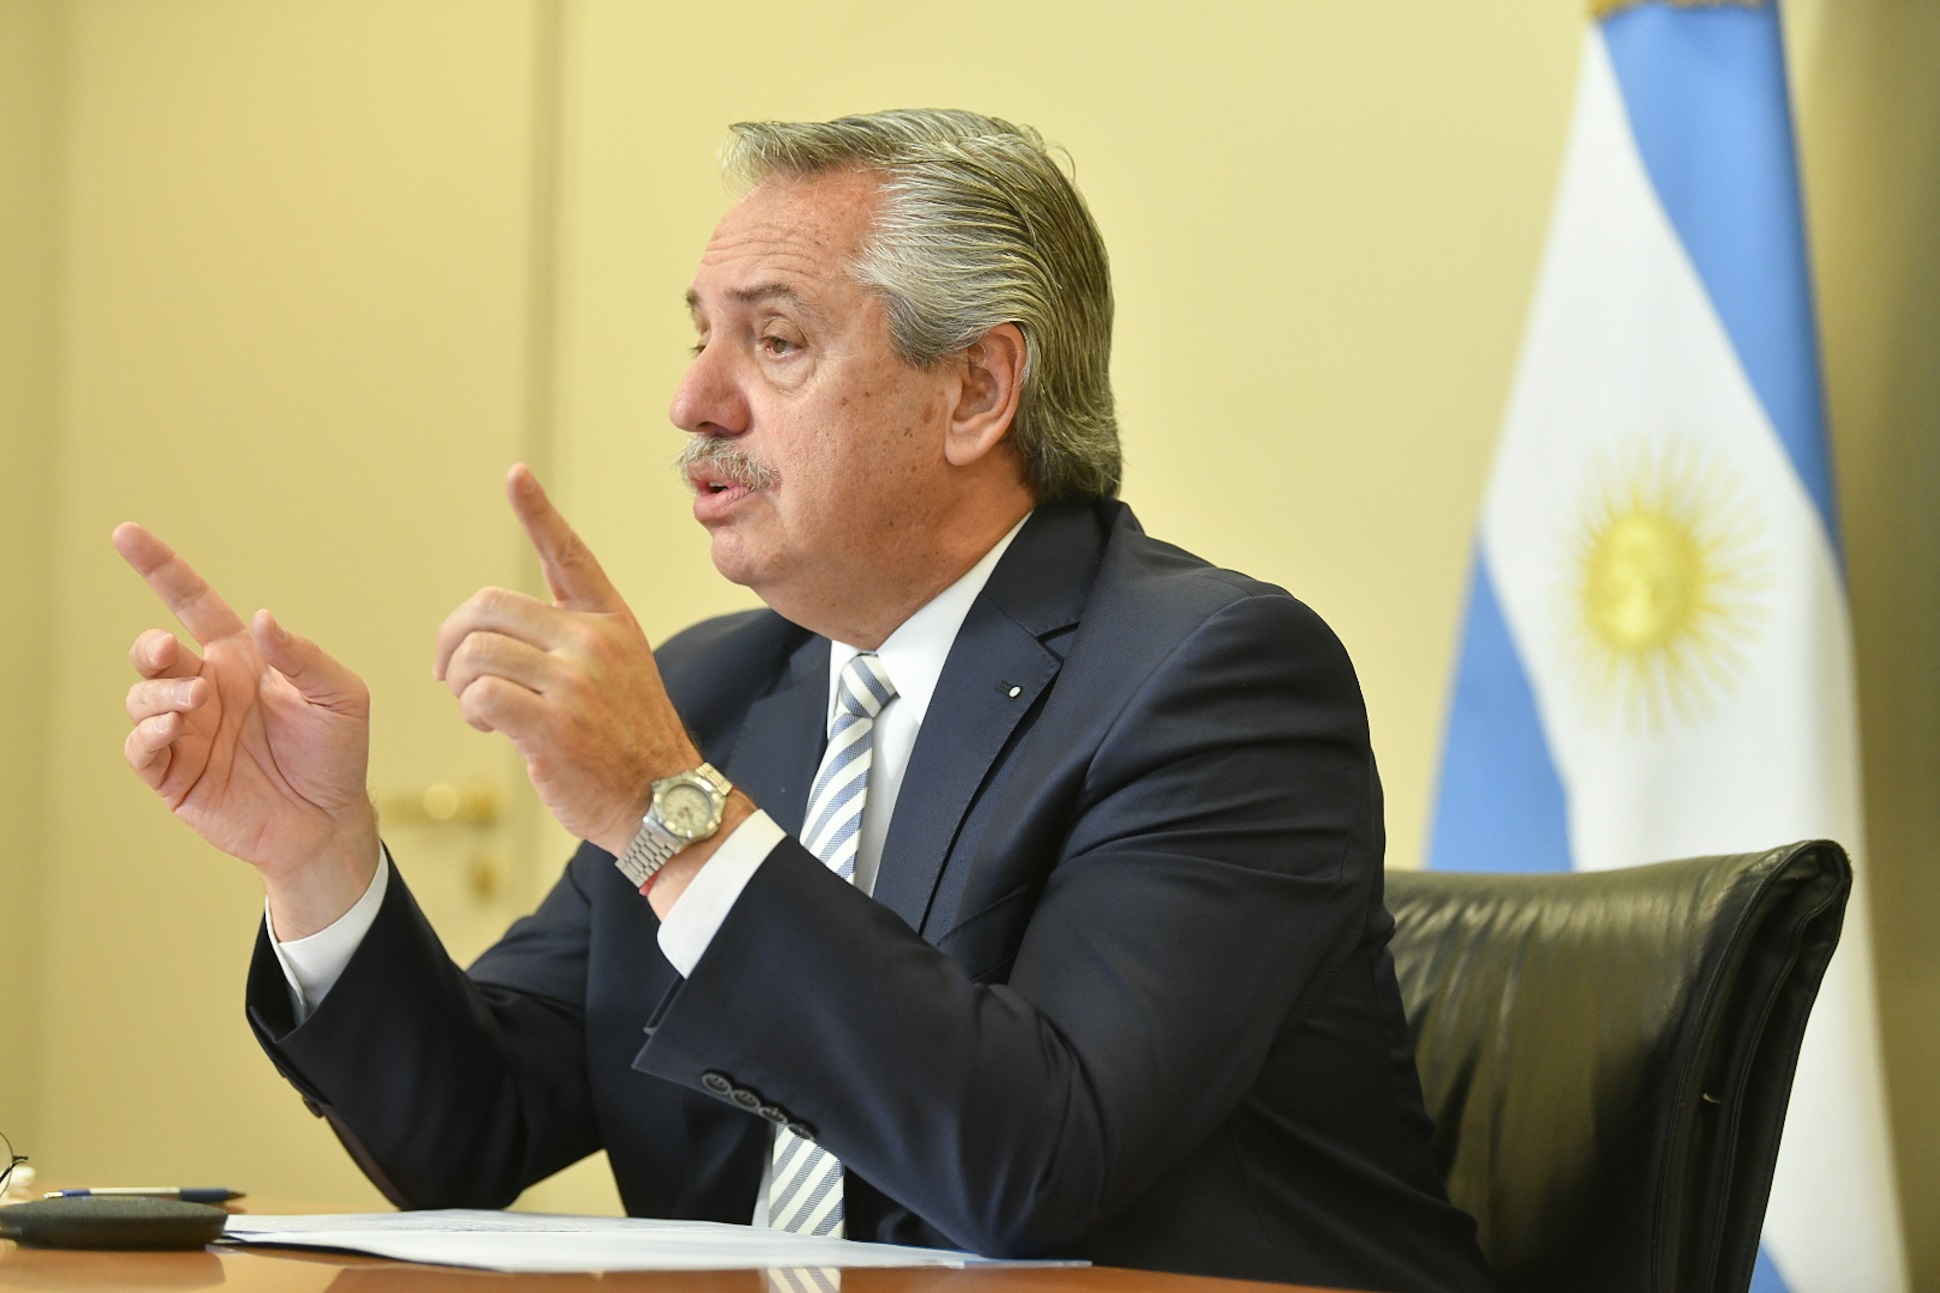 Alberto Fernández: “En la negociación con el FMI hemos preservado los derechos de los trabajadores y de los grupos más vulnerables”